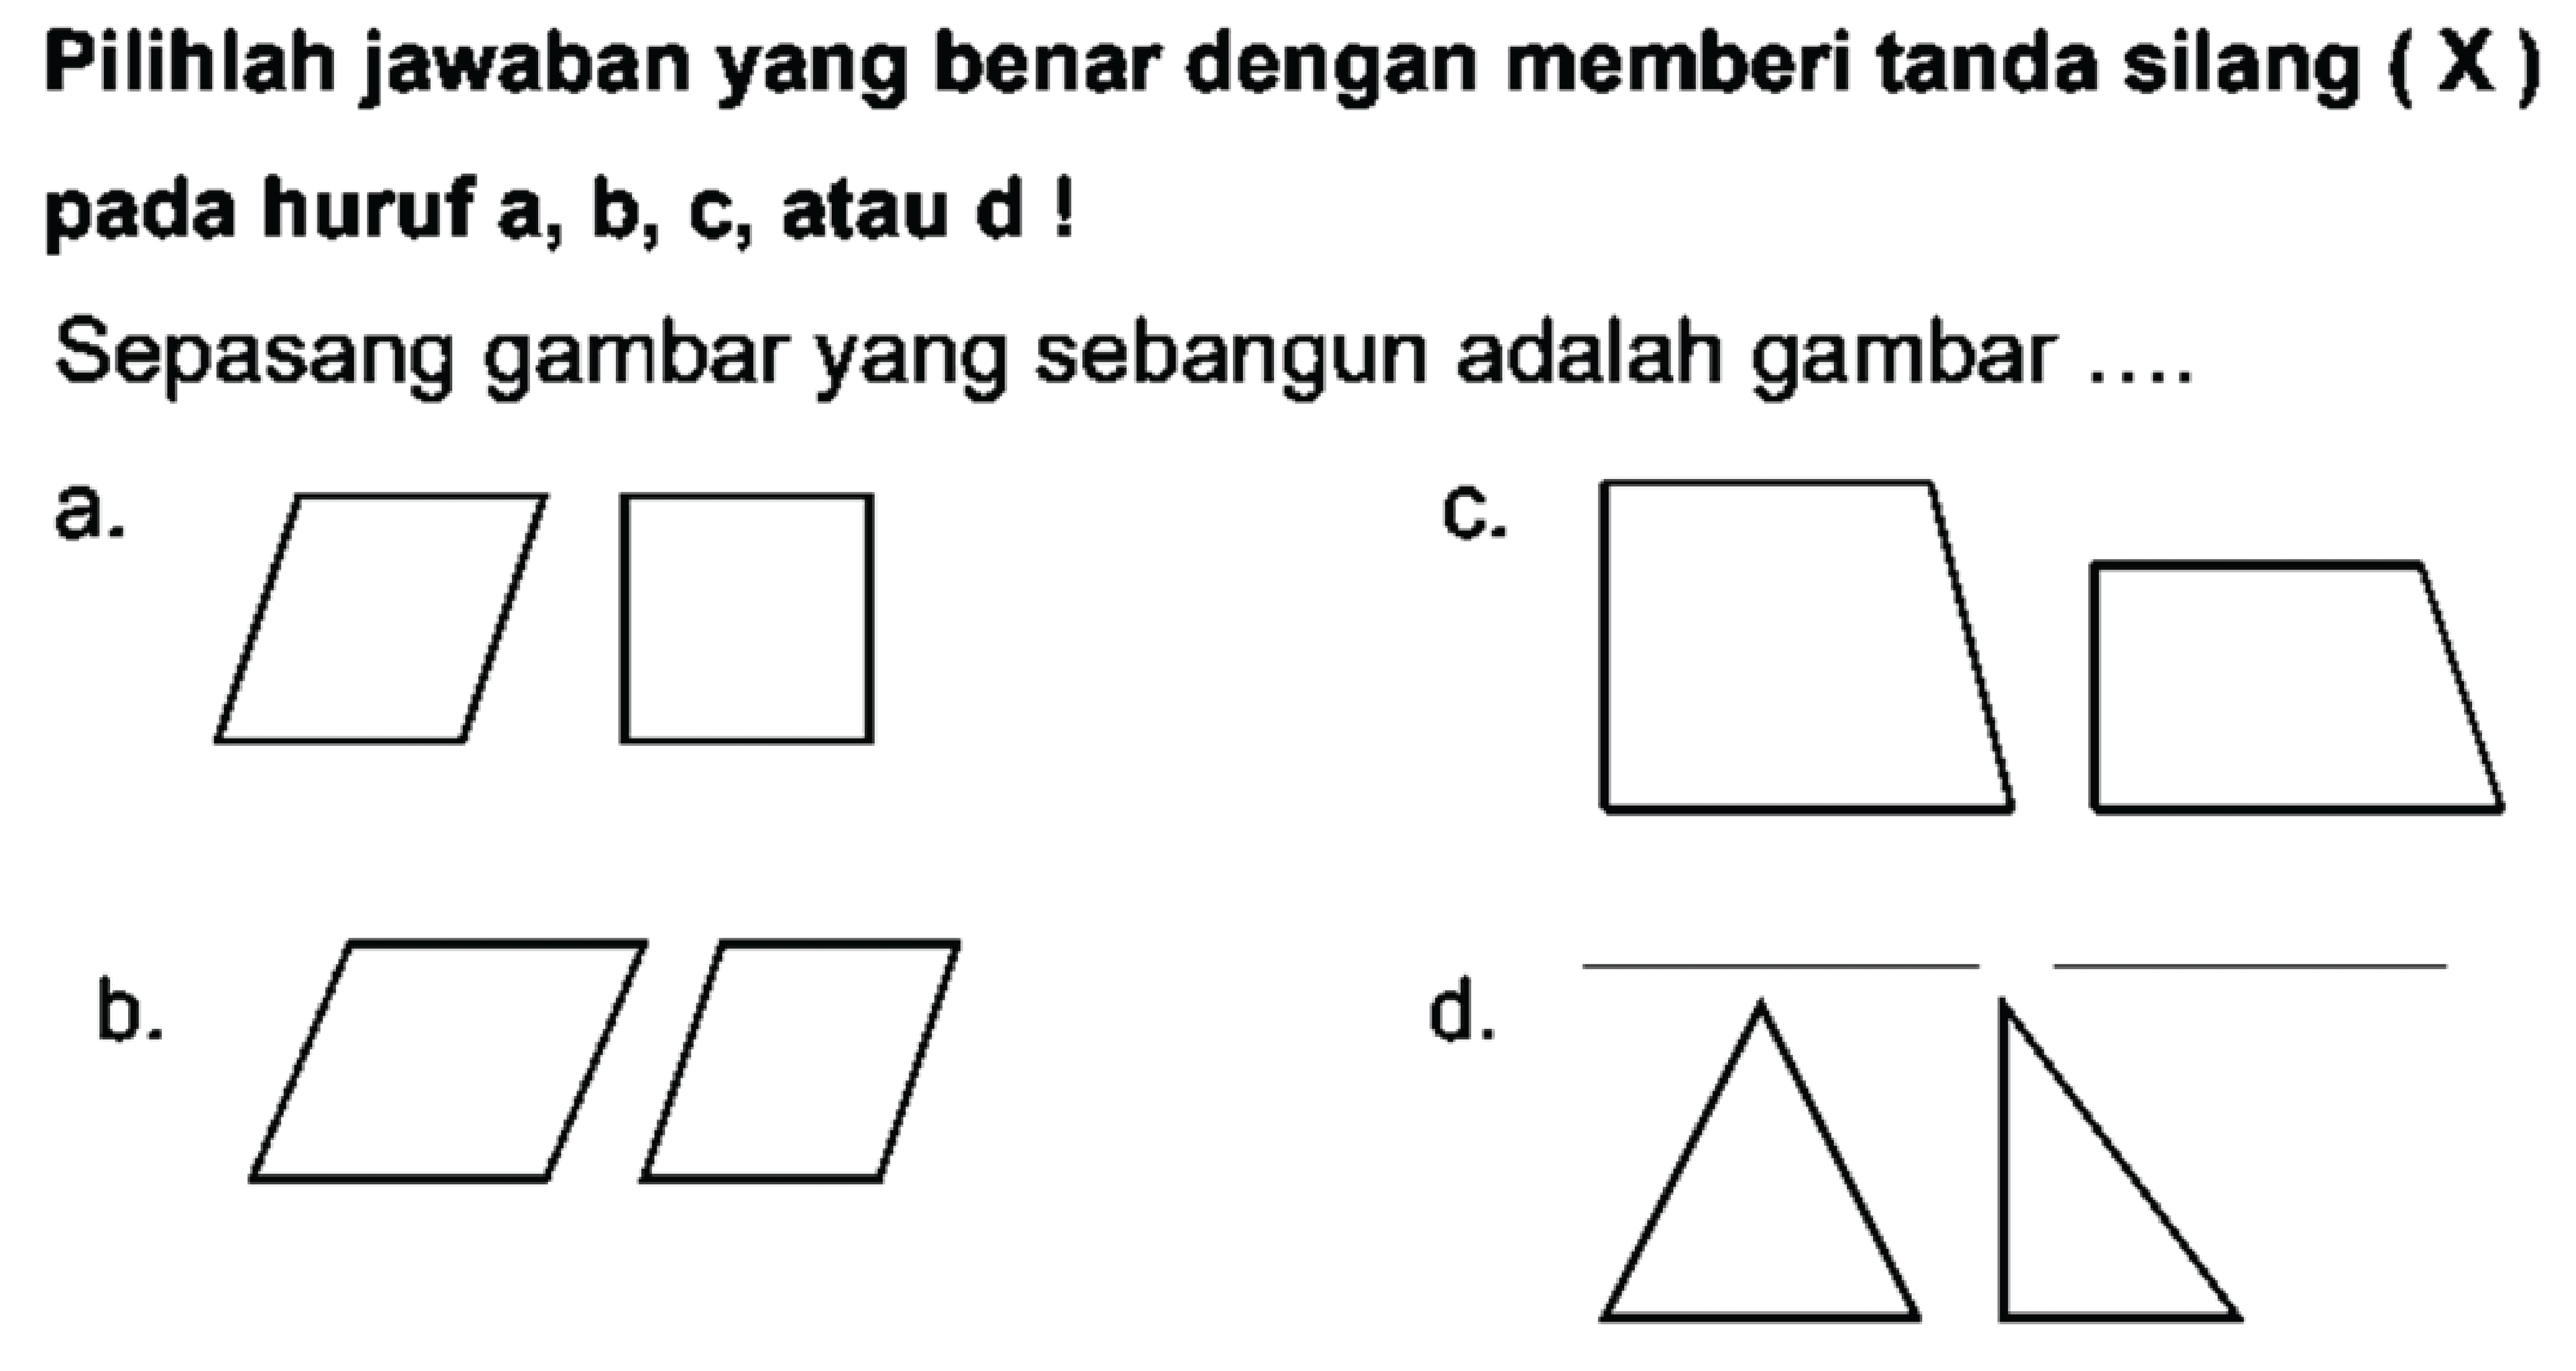 Pilihlah jawaban yang benar dengan memberi tanda silang  (X)  pada huruf  a, b, c , atau  d  !
Sepasang gambar yang sebangun adalah gambar ....
a.
C.
b.
d.